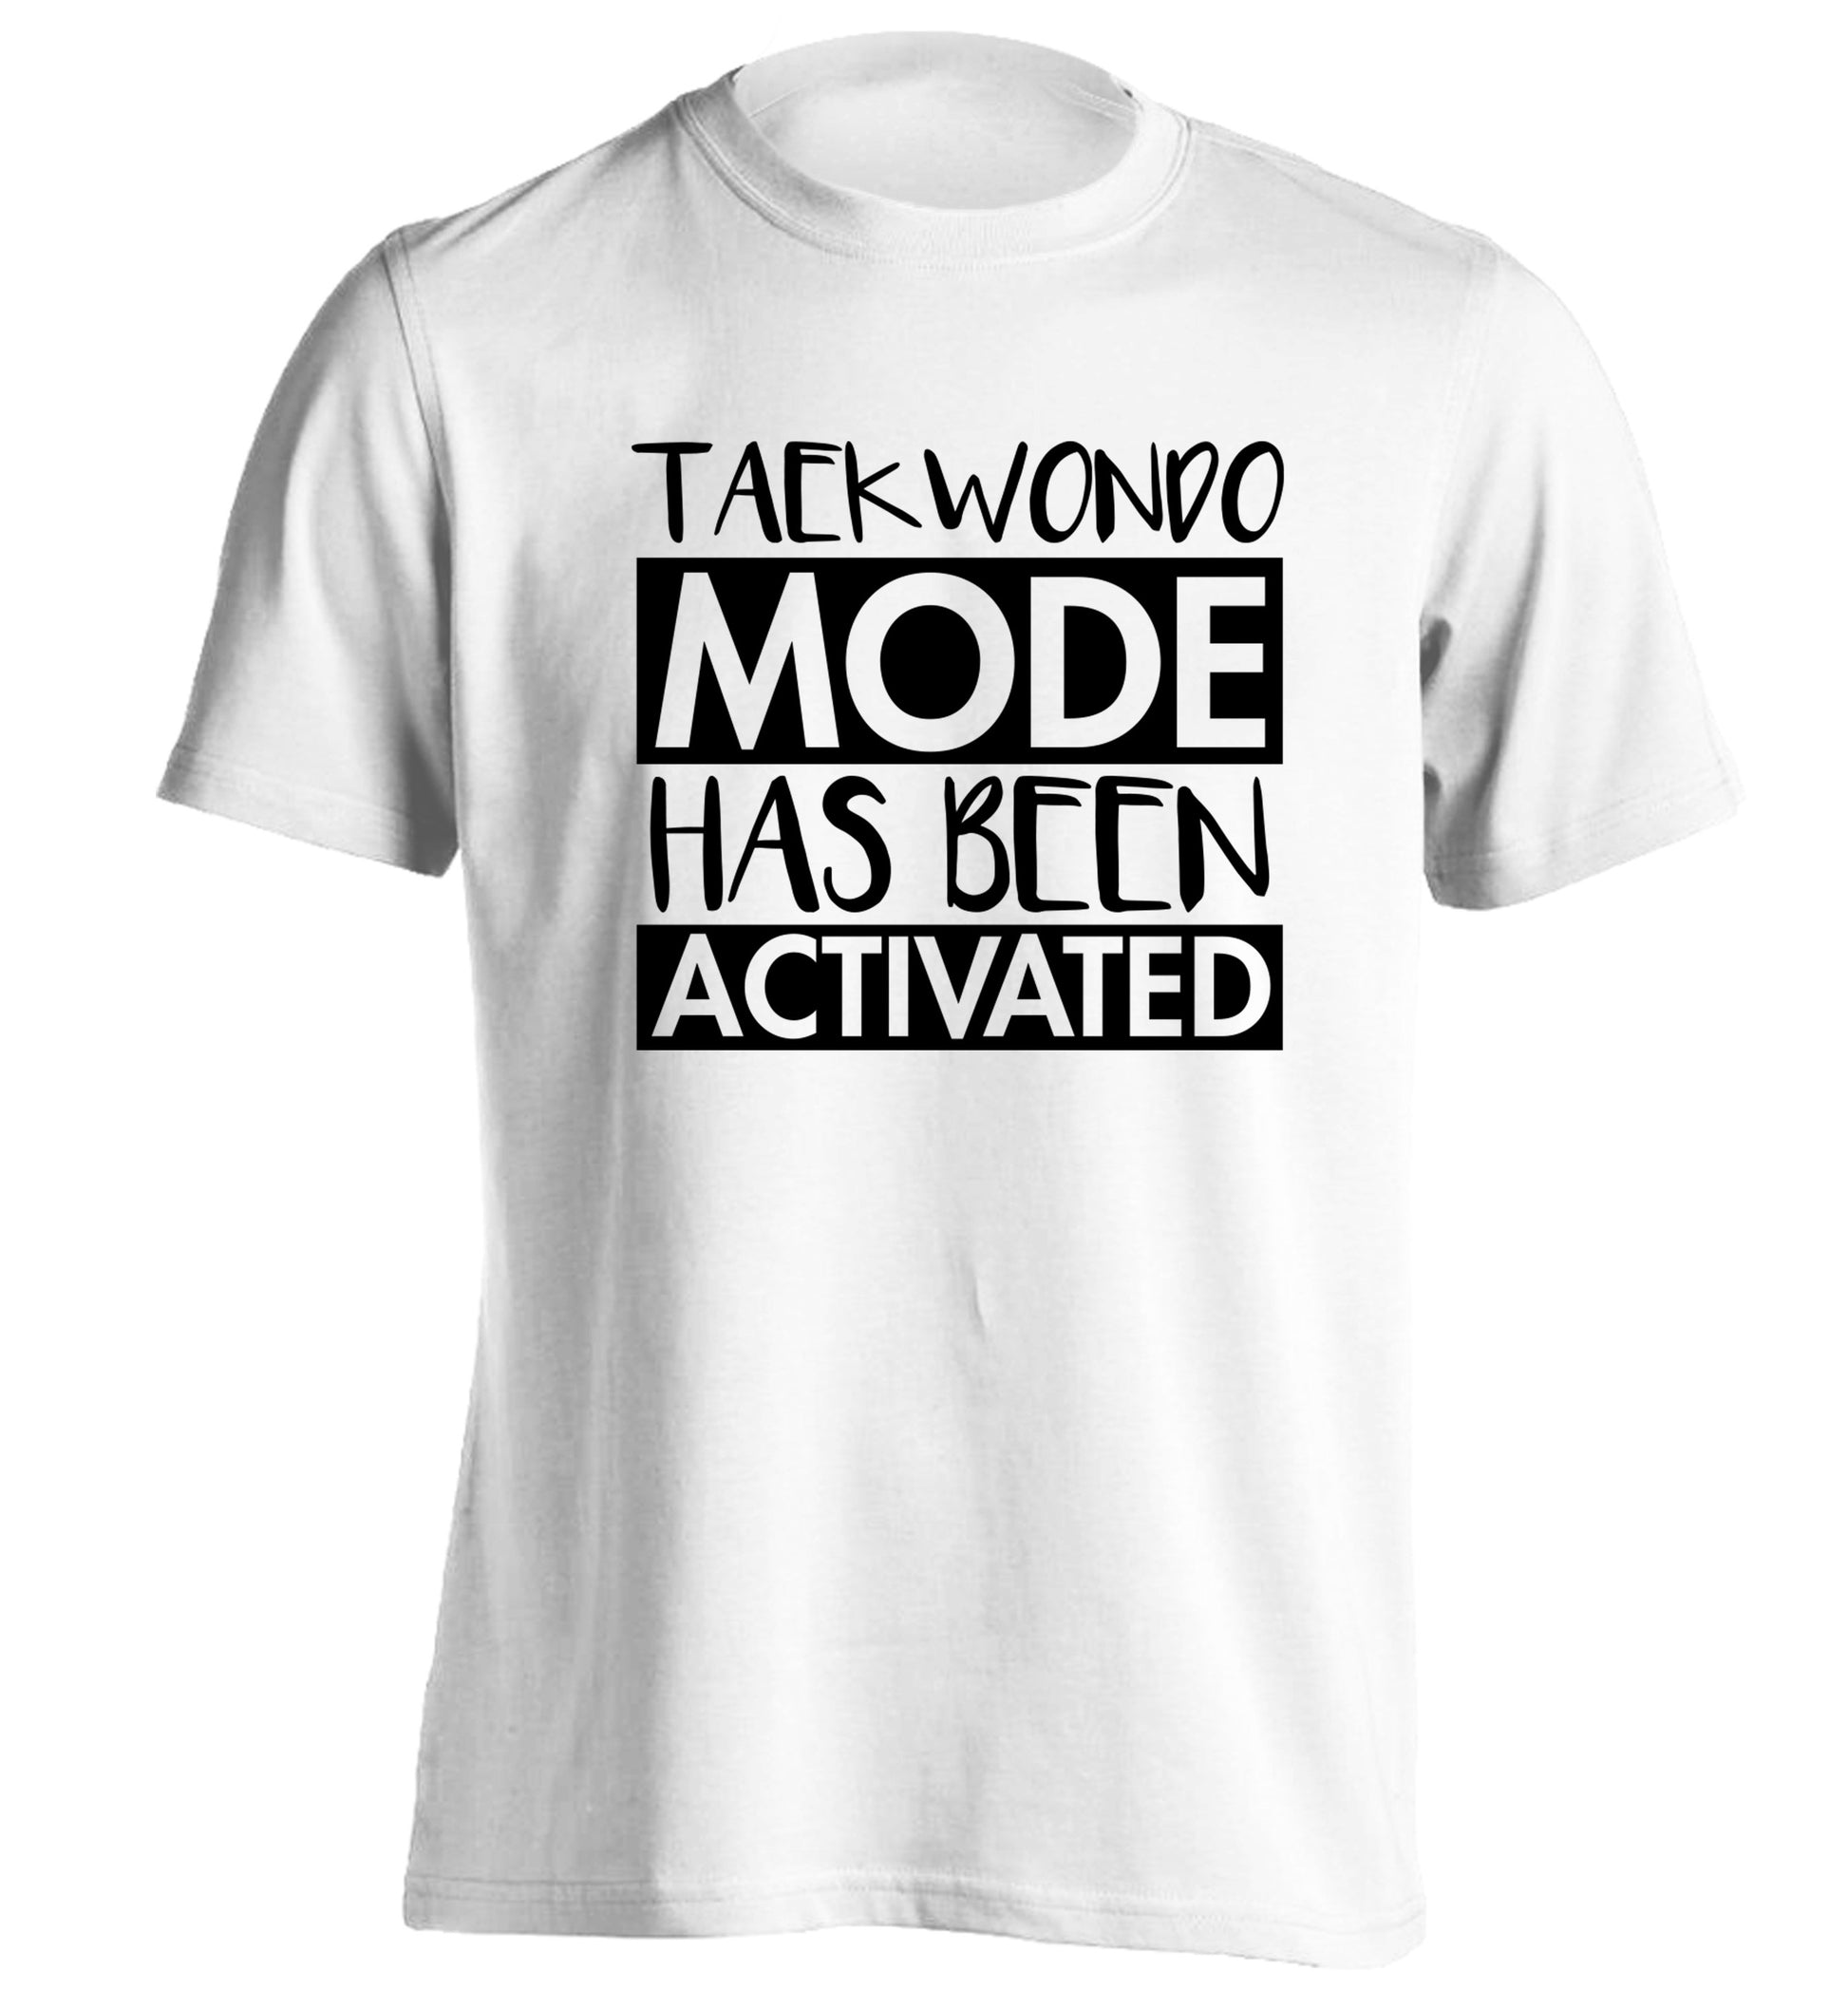 Taekwondo mode activated adults unisex white Tshirt 2XL